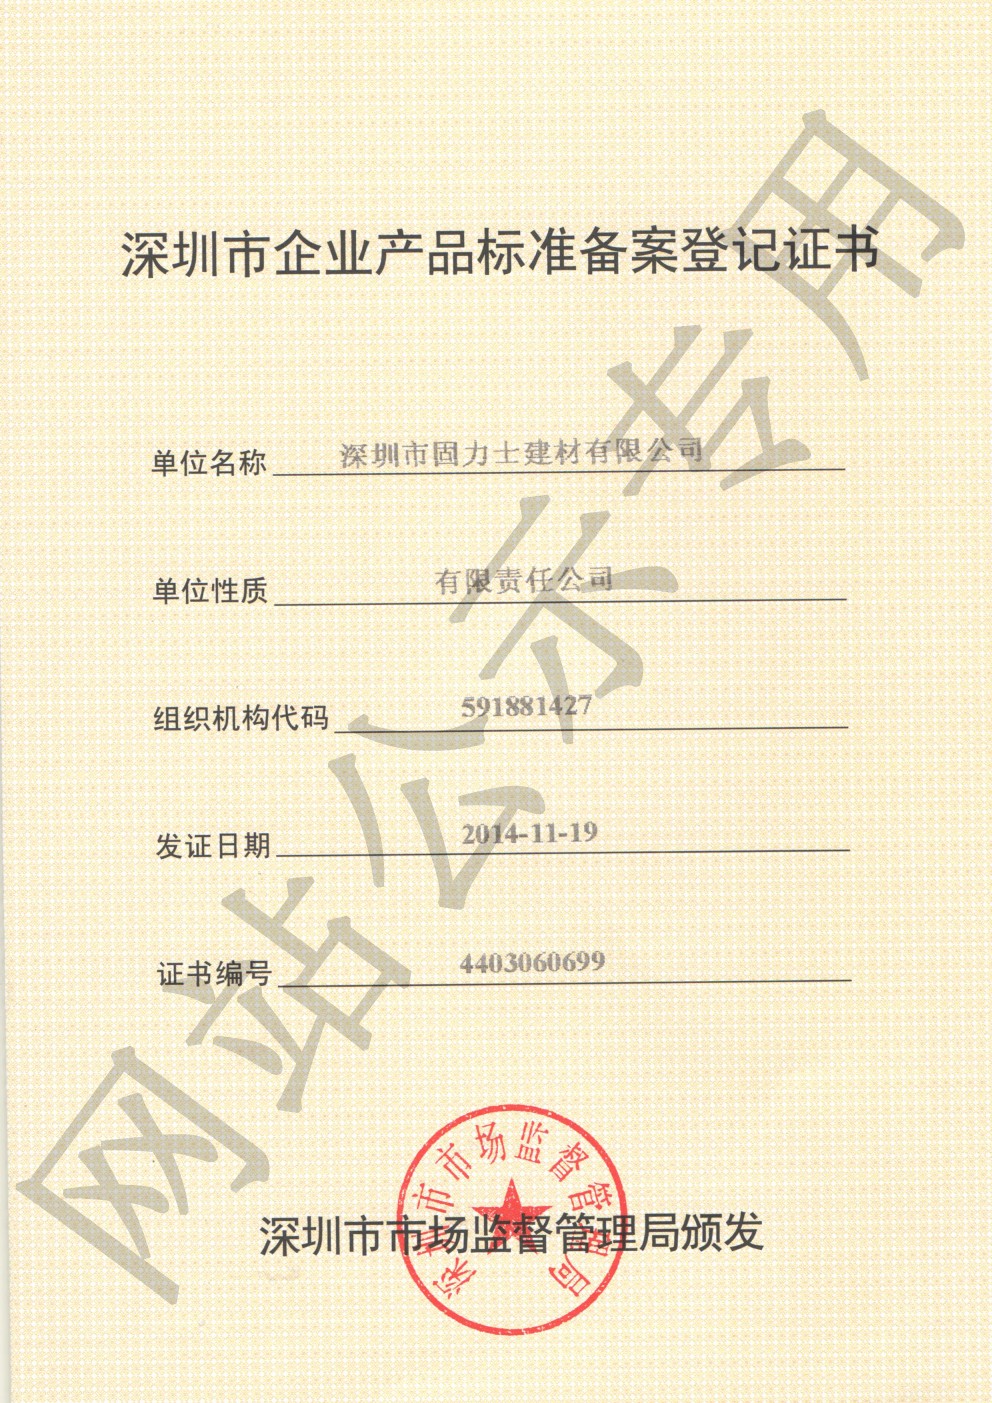 普兰企业产品标准登记证书